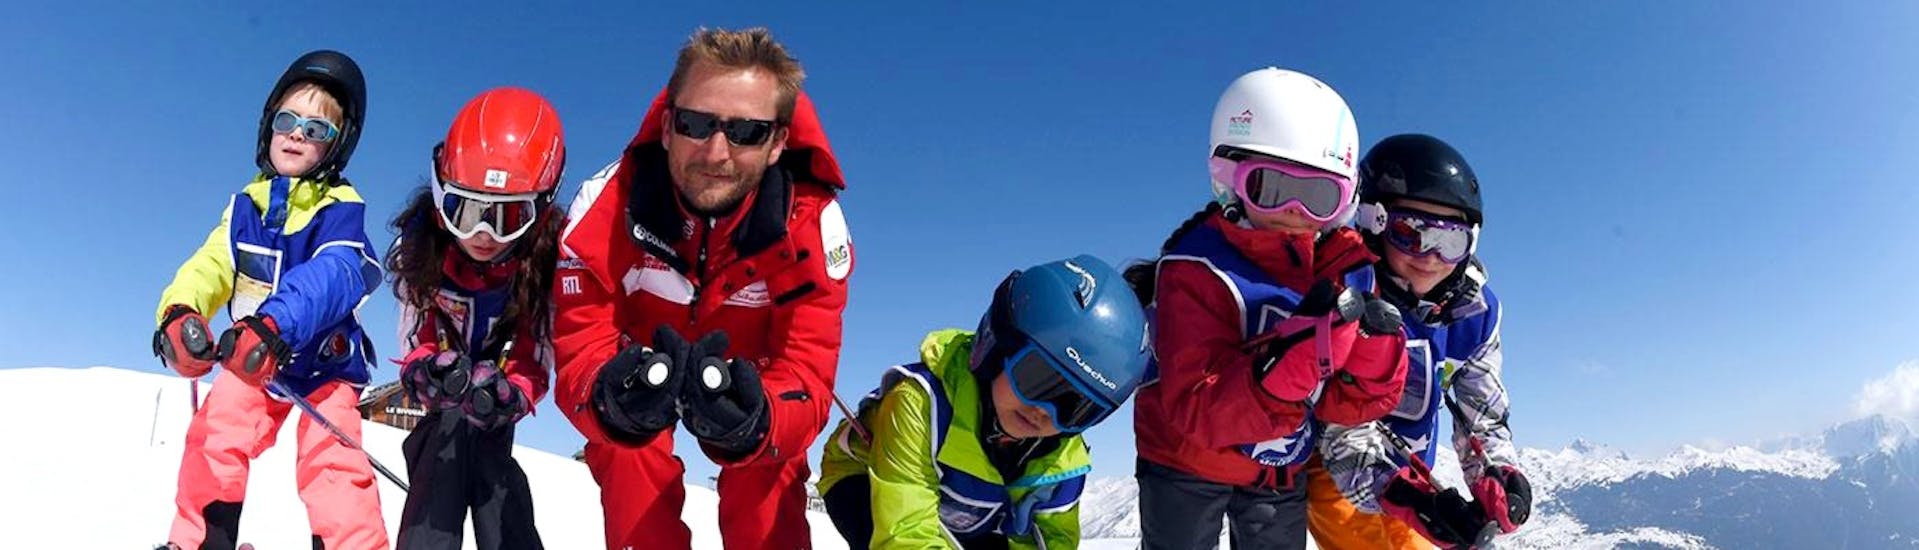 Clases de esquí para niños a partir de 6 años para avanzados.